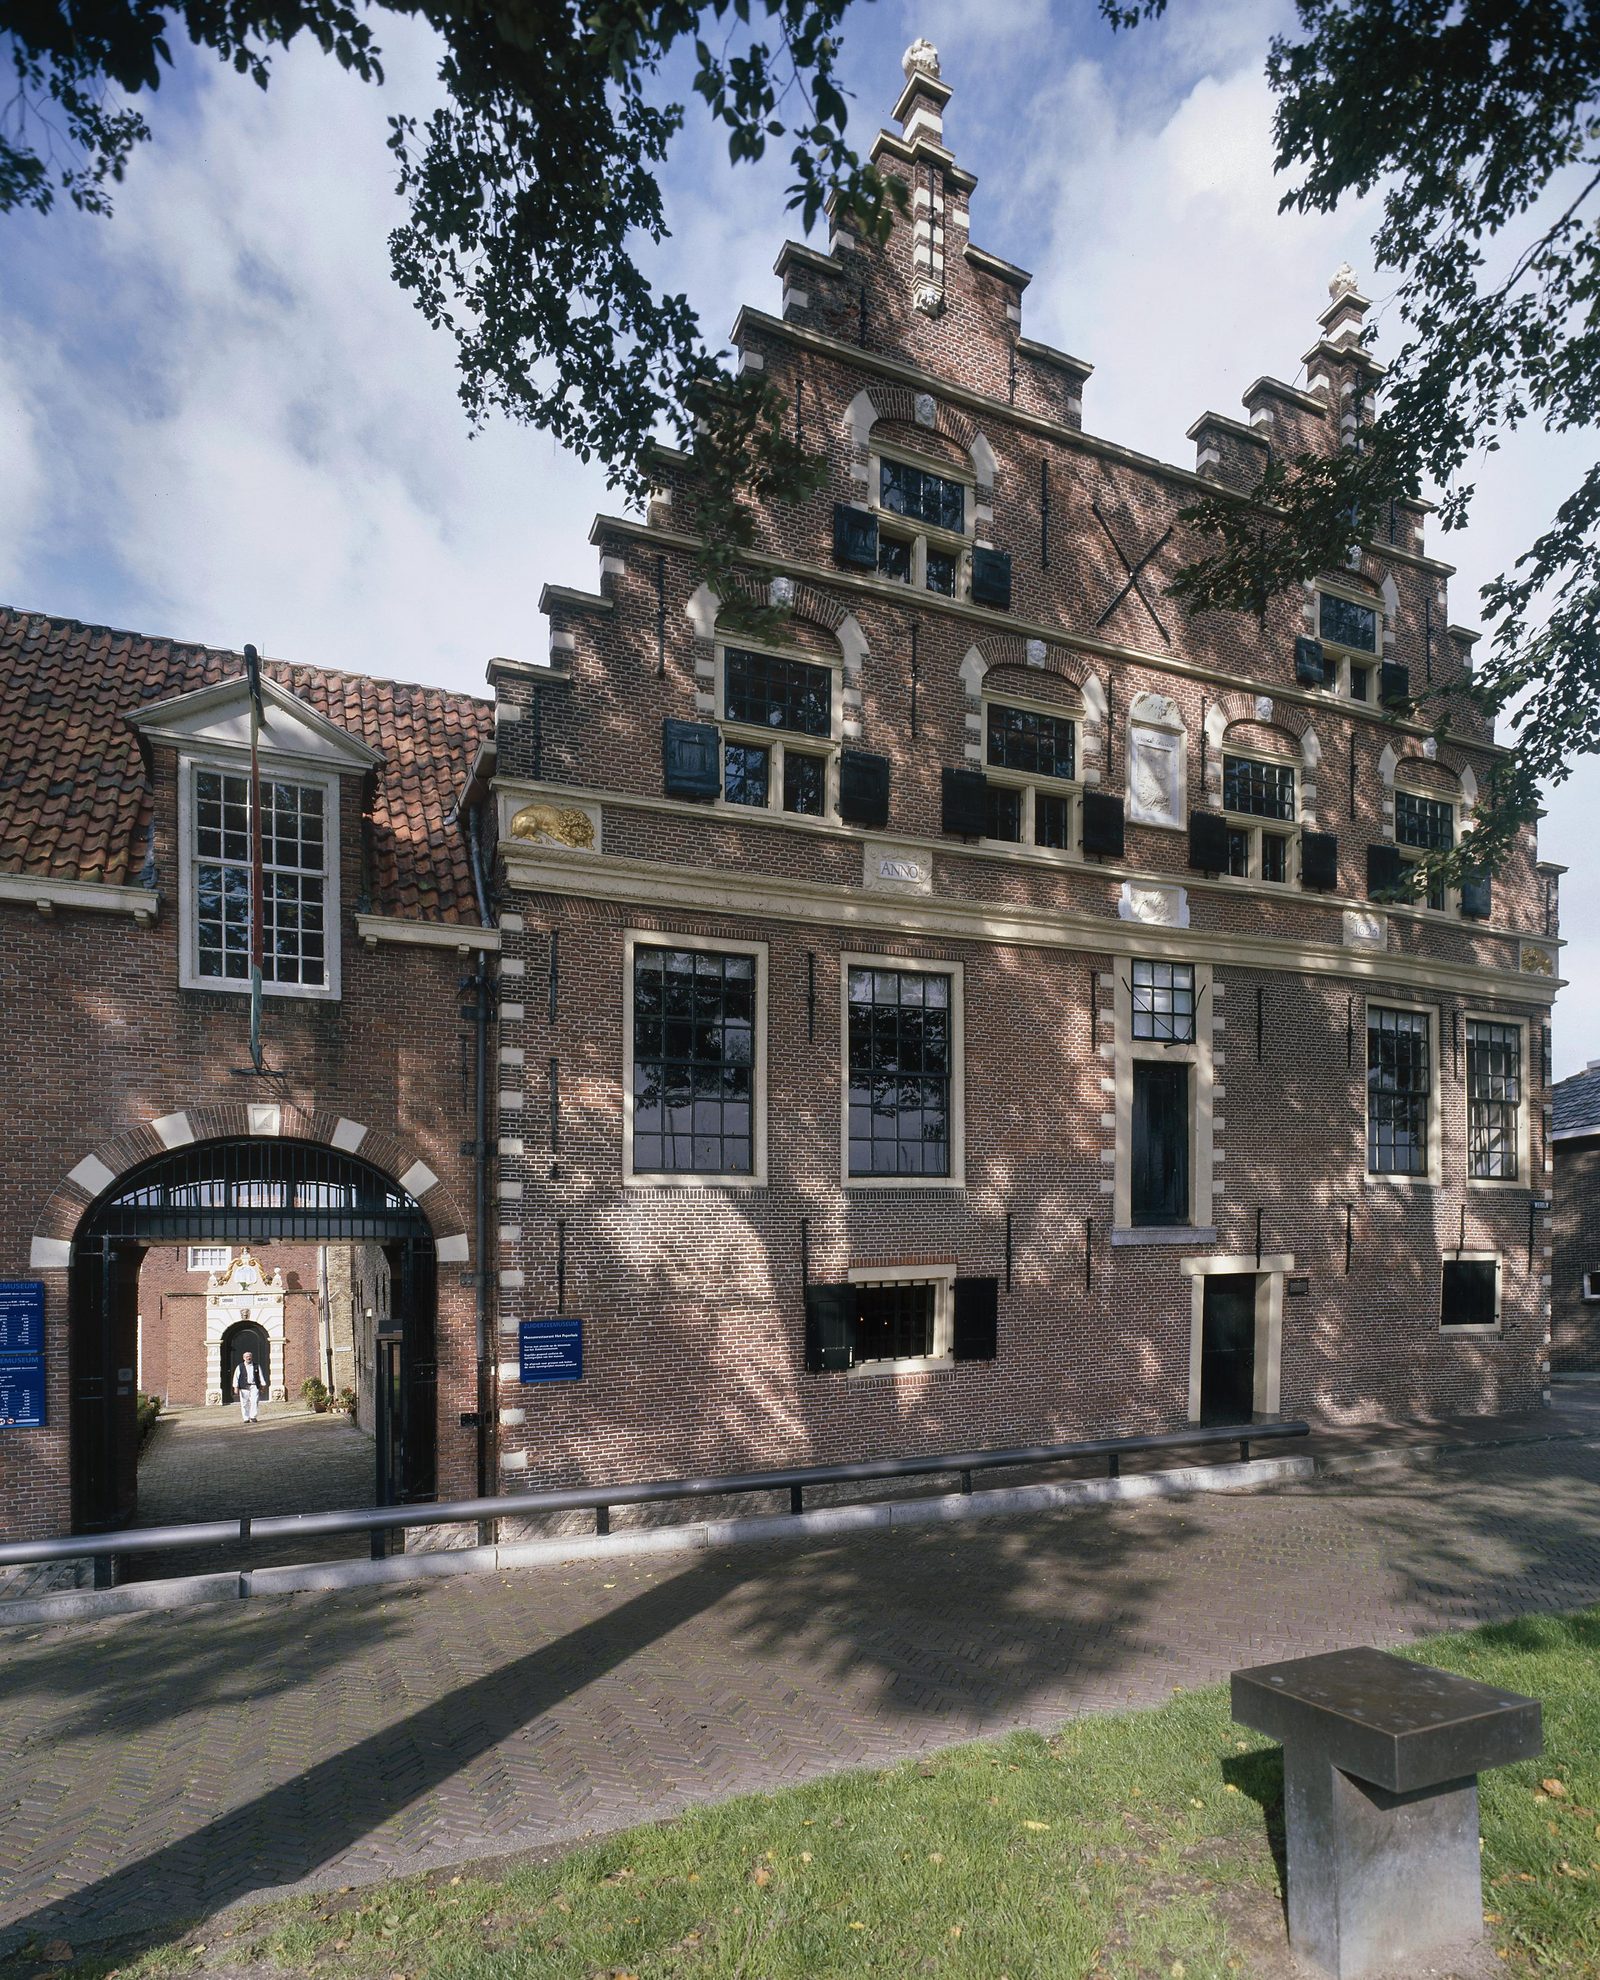 Zuiderzee museum